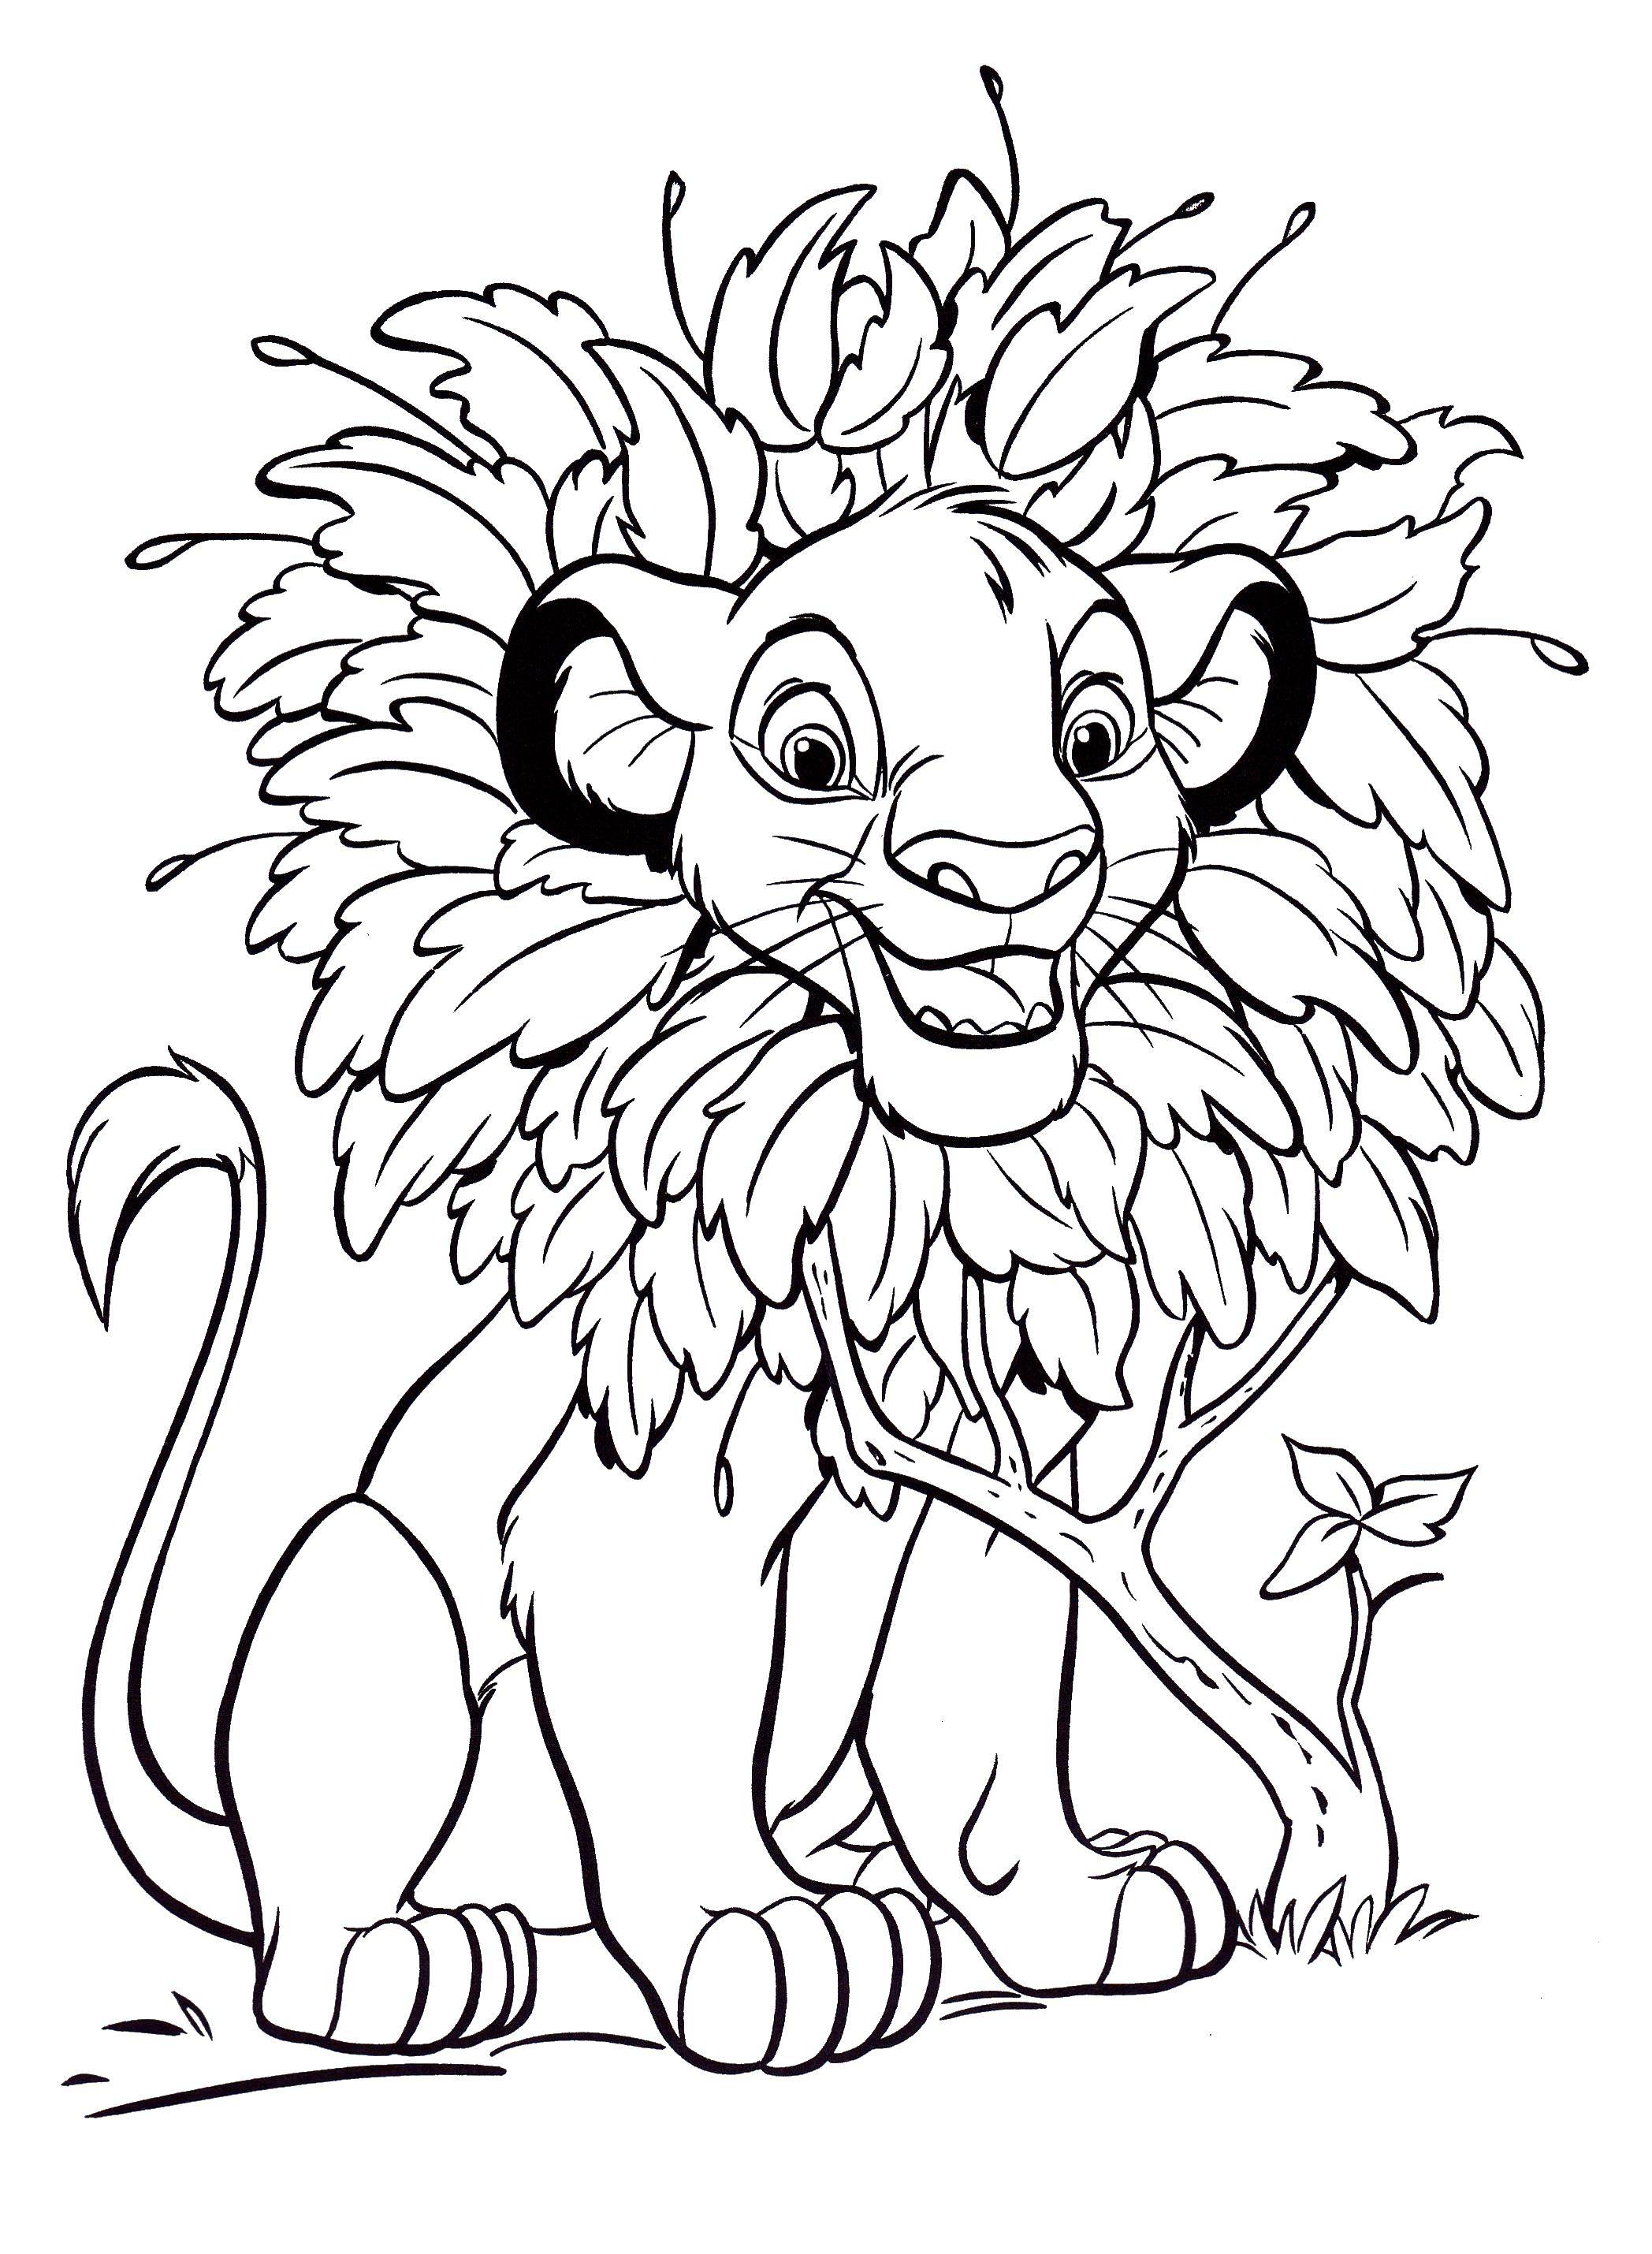 Название: Раскраска Симба играет. Категория: Диснеевские раскраски. Теги: Симба, Нала, Король лев.